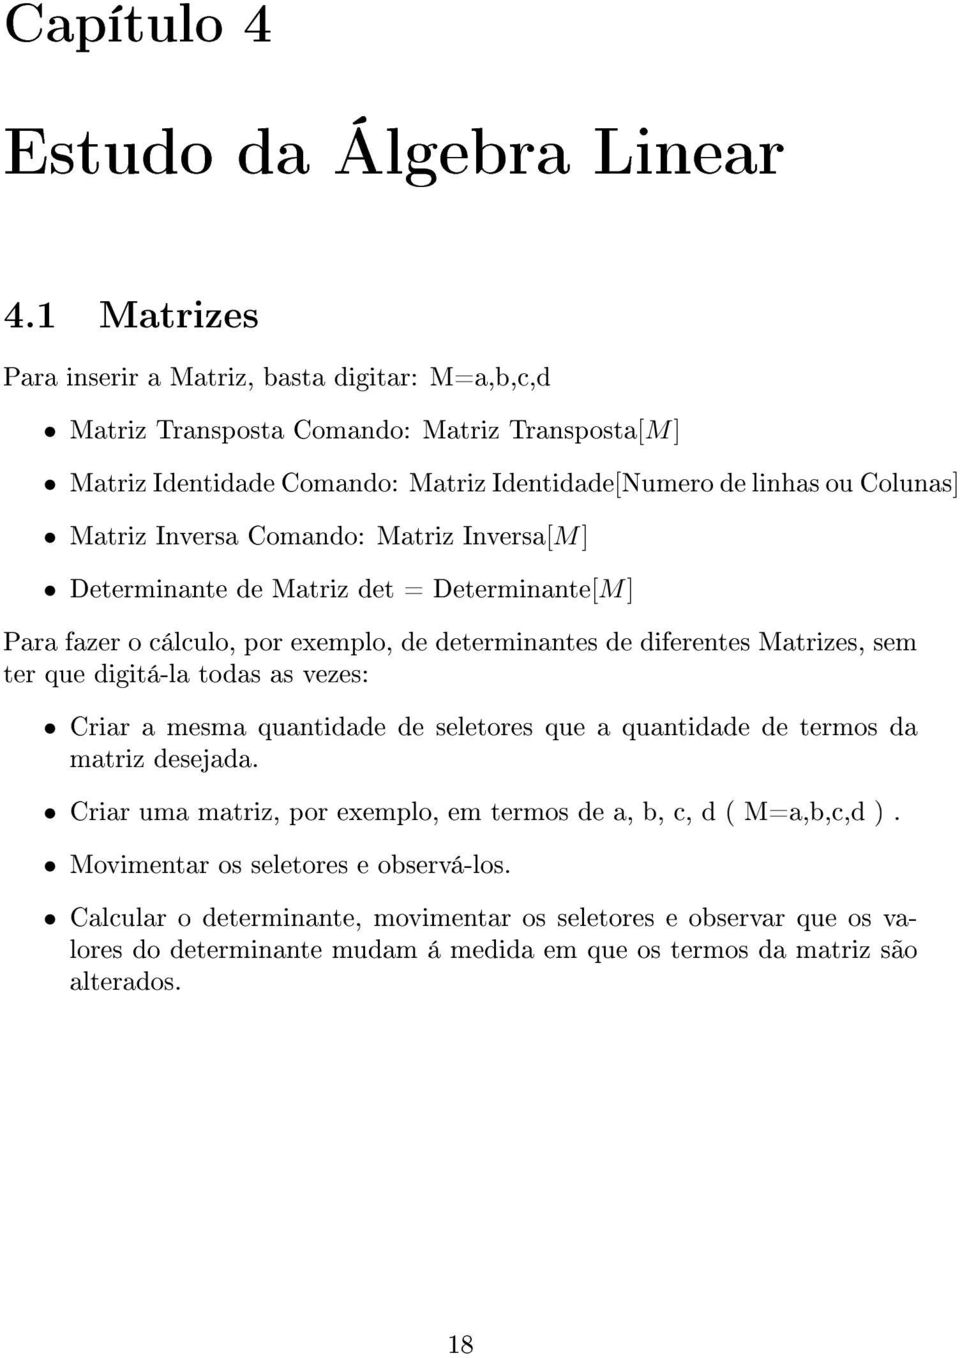 Inversa Comando: Matriz Inversa[M] Determinante de Matriz det = Determinante[M] Para fazer o cálculo, por exemplo, de determinantes de diferentes Matrizes, sem ter que digitá-la todas as